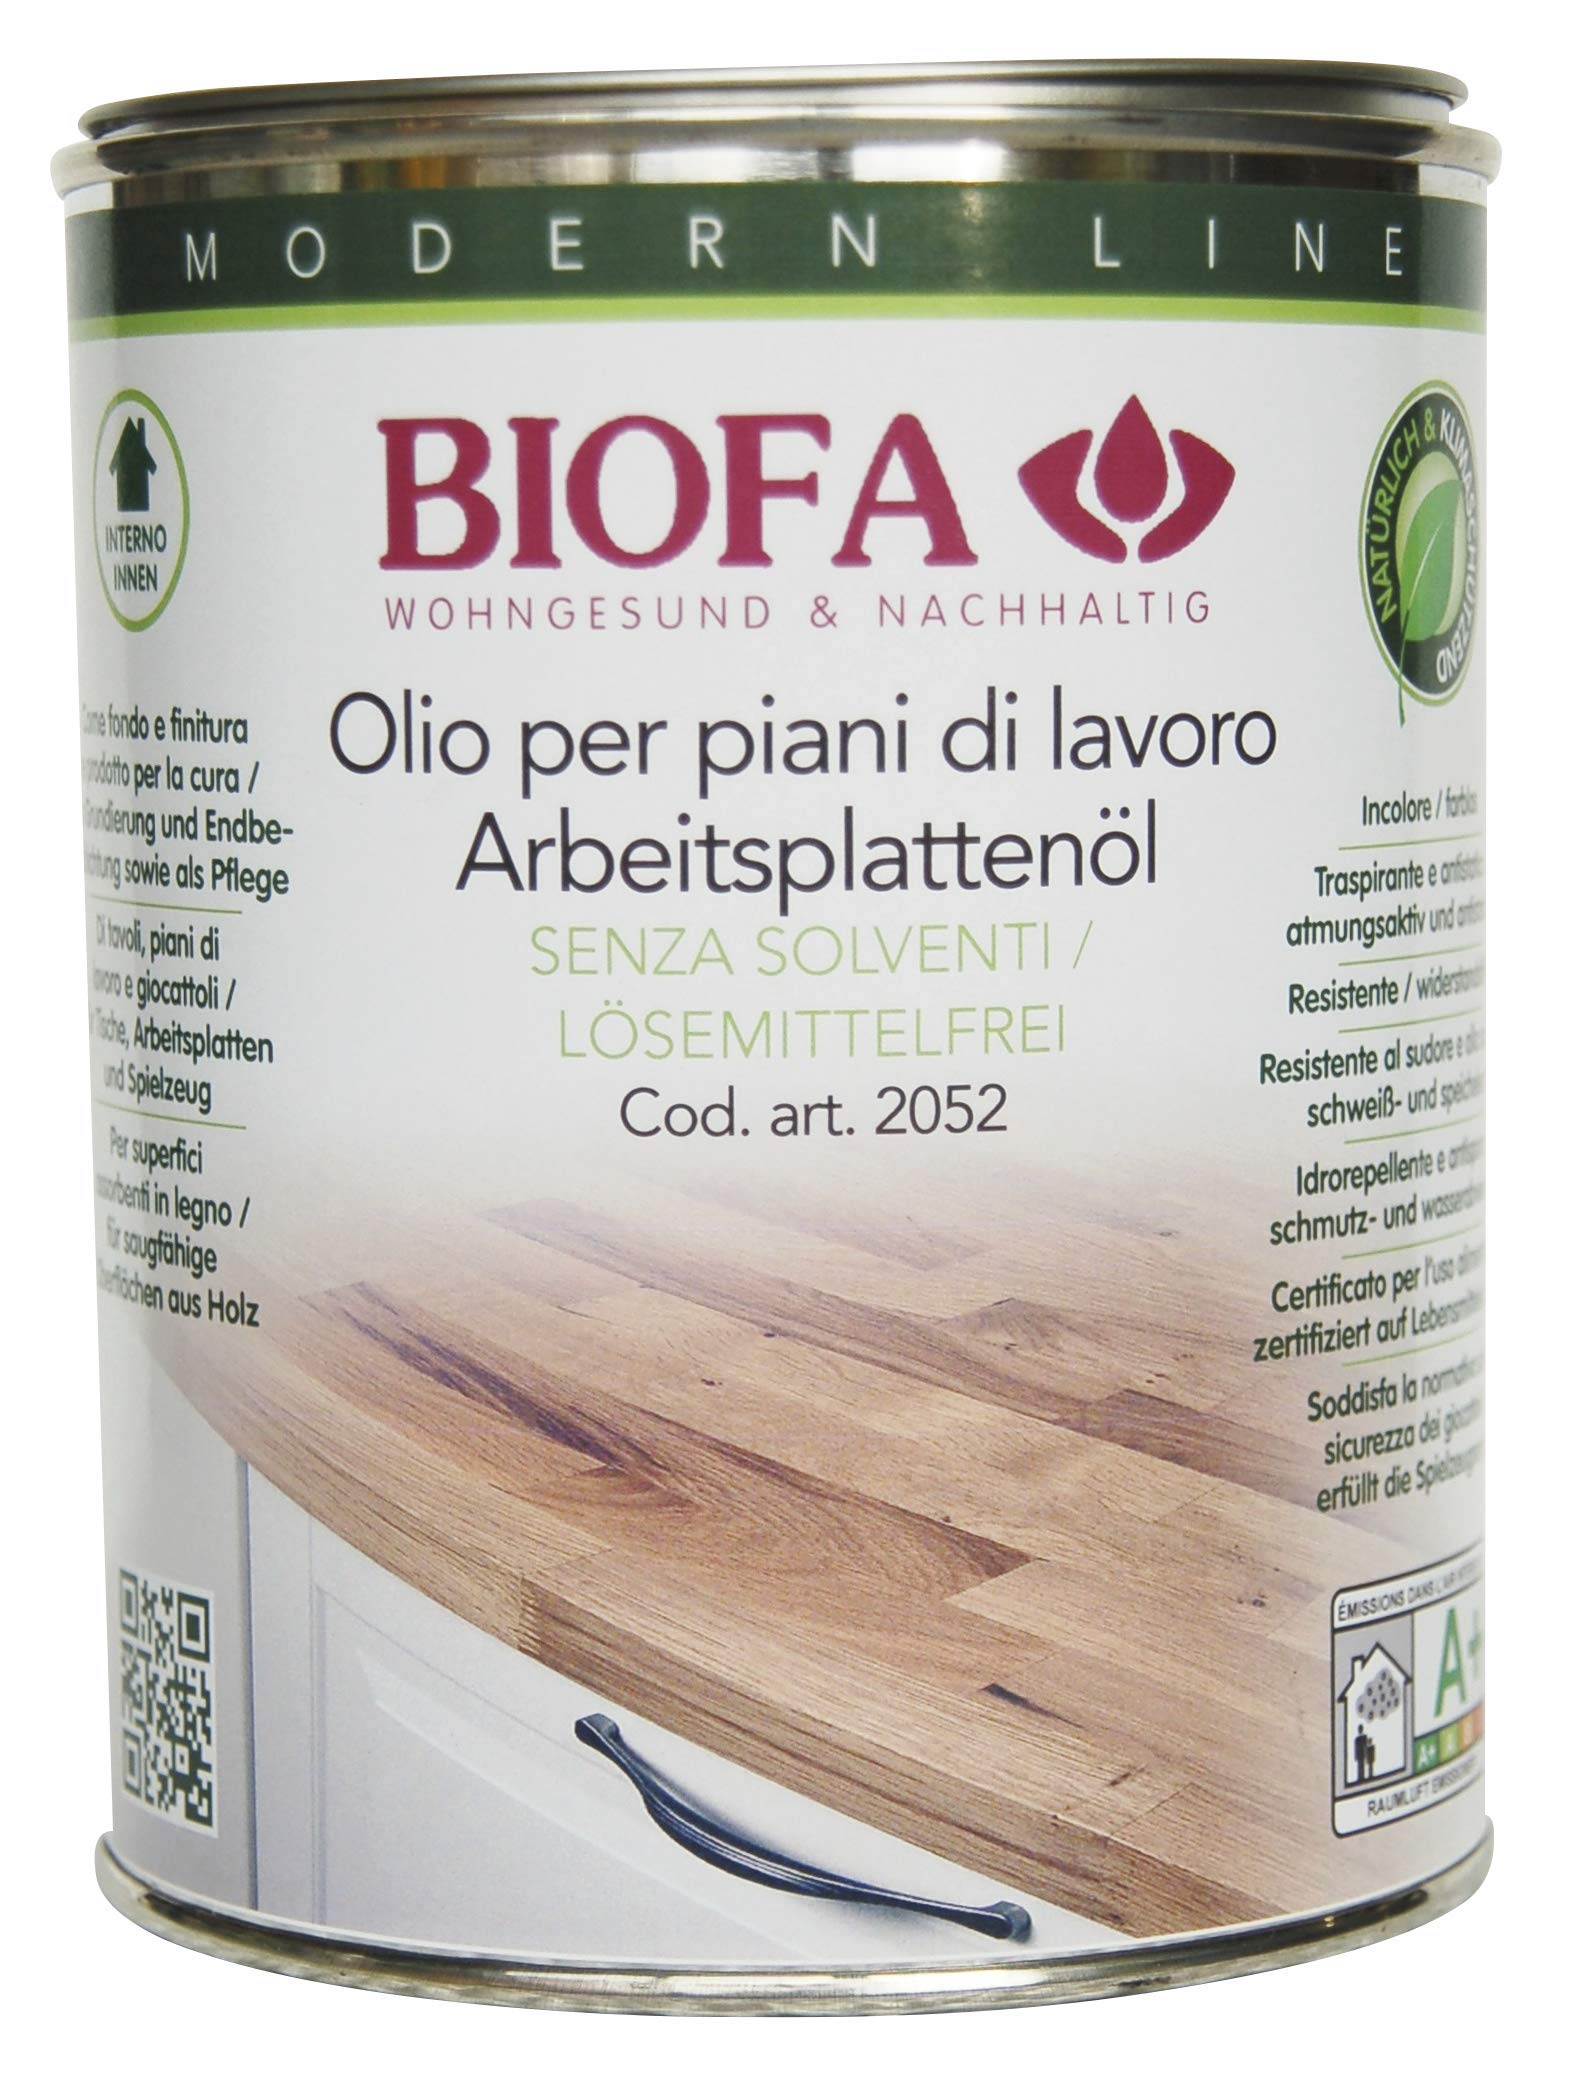 Biofa Arbeitsplattenöl lösemittelfrei - Pflege und Schutz für Holz Arbeitsplatten, Tische, Spielzeug (1 Liter)